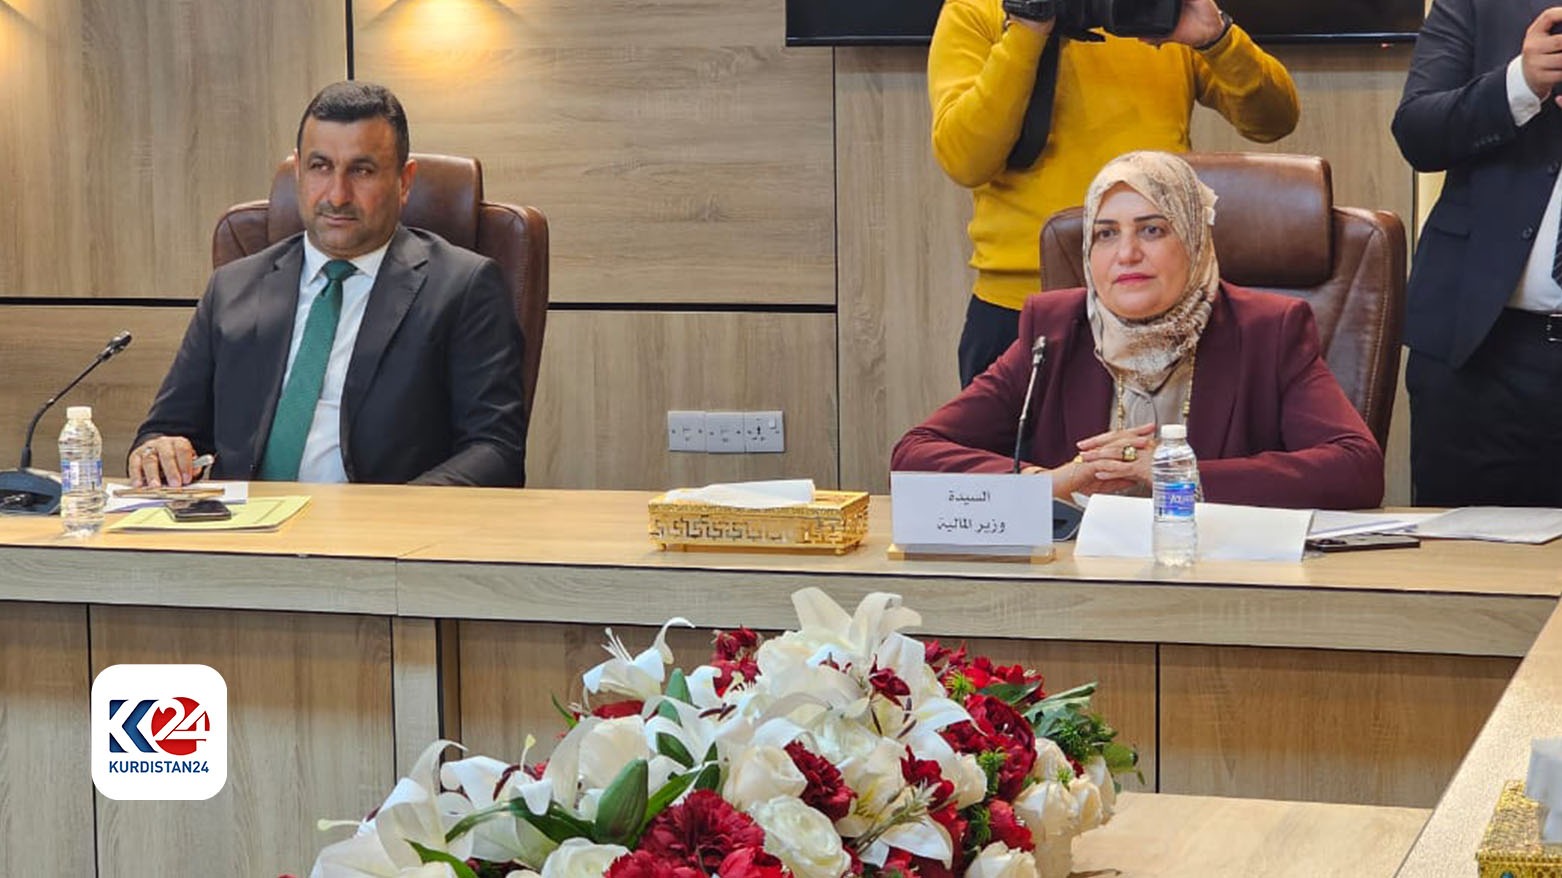 البرلمان العراقي يناقش طيف سامي توطين رواتب موظفي إقليم كوردستان